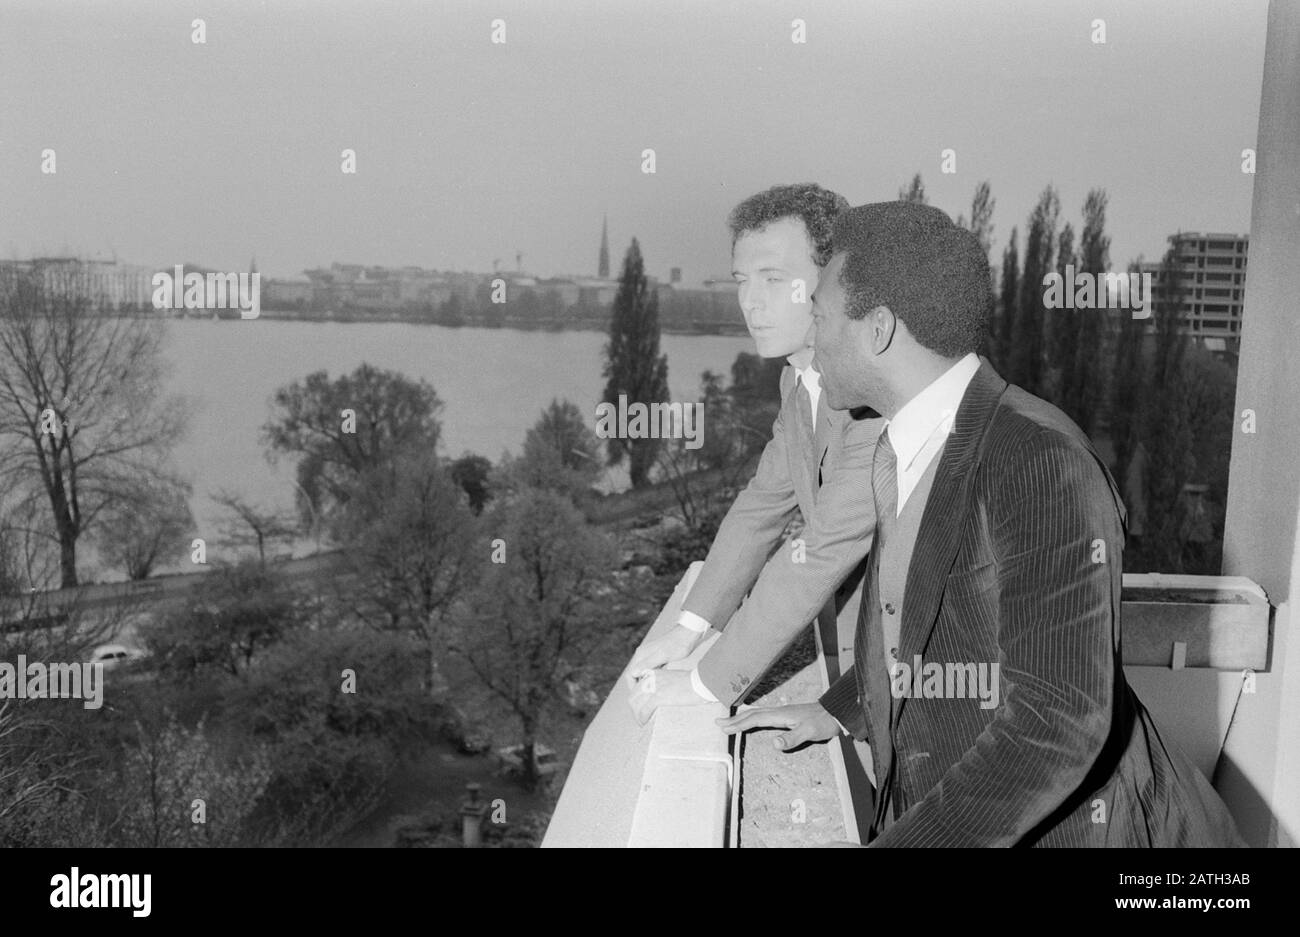 Pele, brasilianischer Fußballspieler, mit Franz Beckenbauer in Hamburg, Deutschland 1981. Brazilian football player Pele with Franz Beckenbauer at Hamburg, Germany 1981. Stock Photo